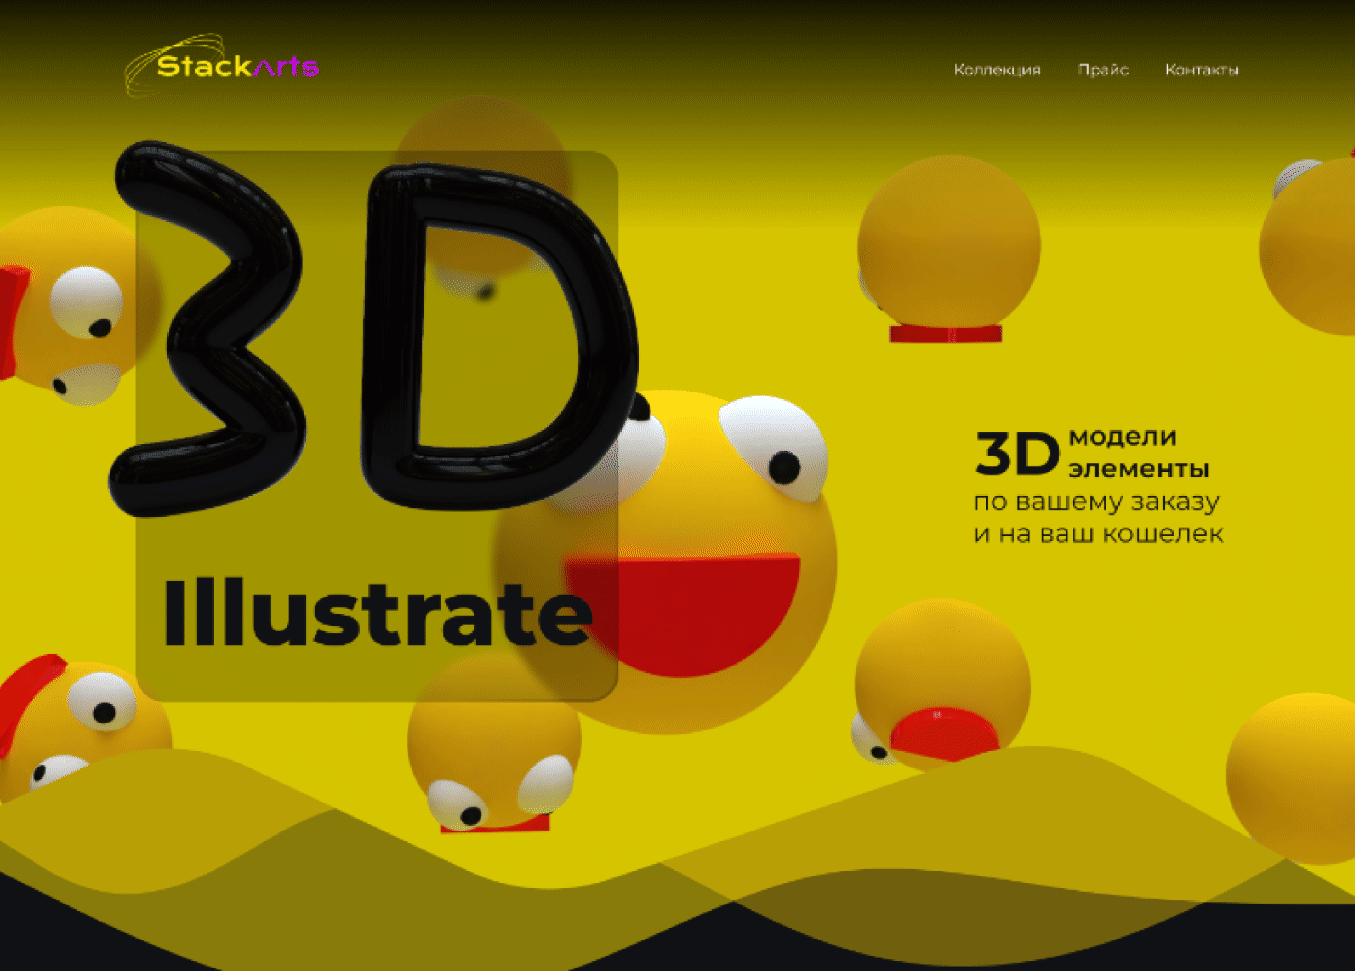 StackArts - Landing page app design graphic design illustration ui ux web design